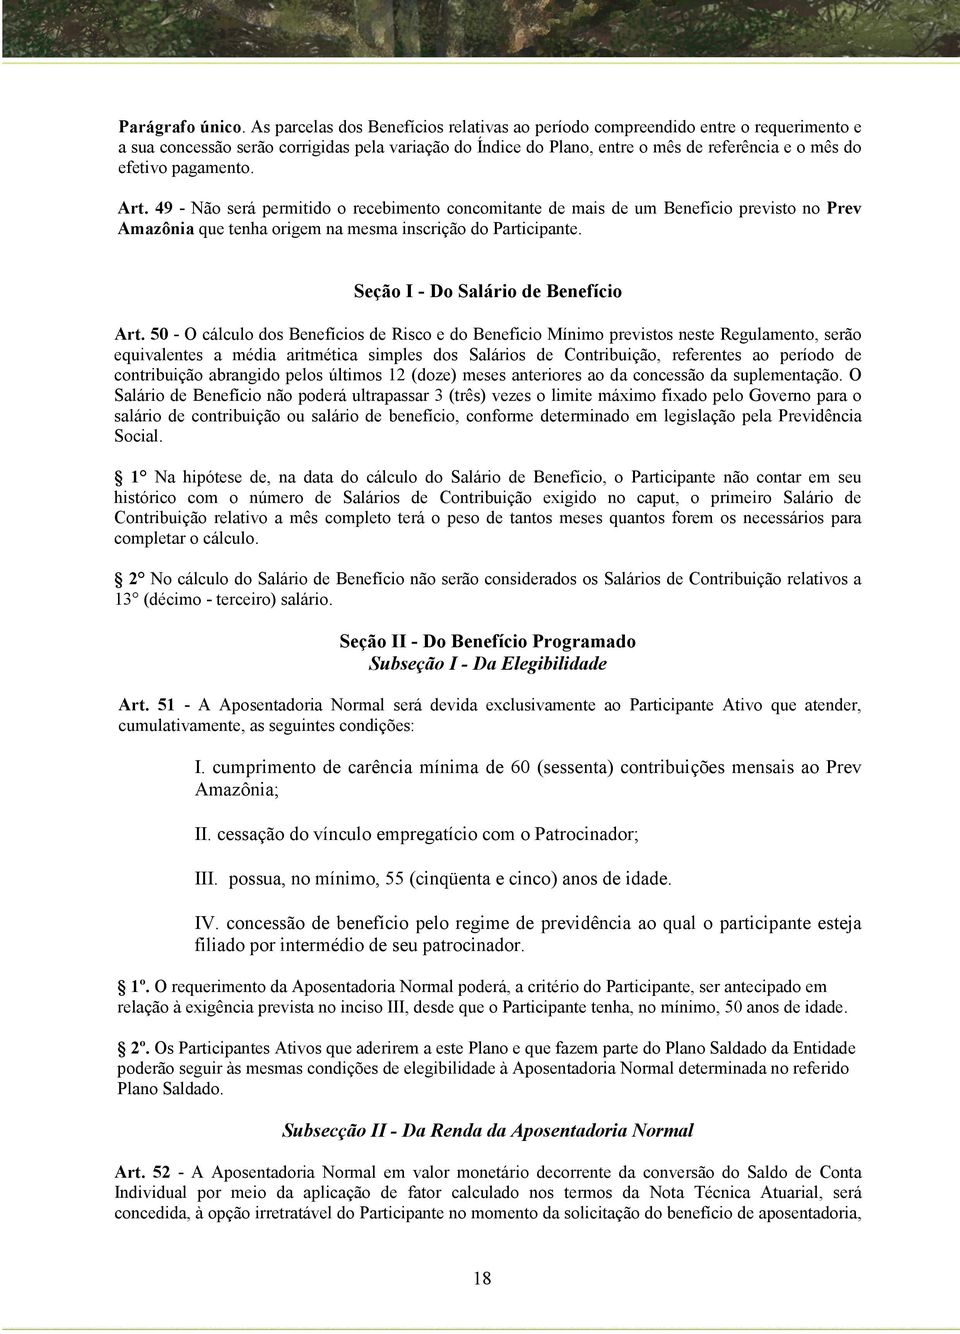 pagamento. Art. 49 - Não será permitido o recebimento concomitante de mais de um Beneficio previsto no Prev Amazônia que tenha origem na mesma inscrição do Participante.